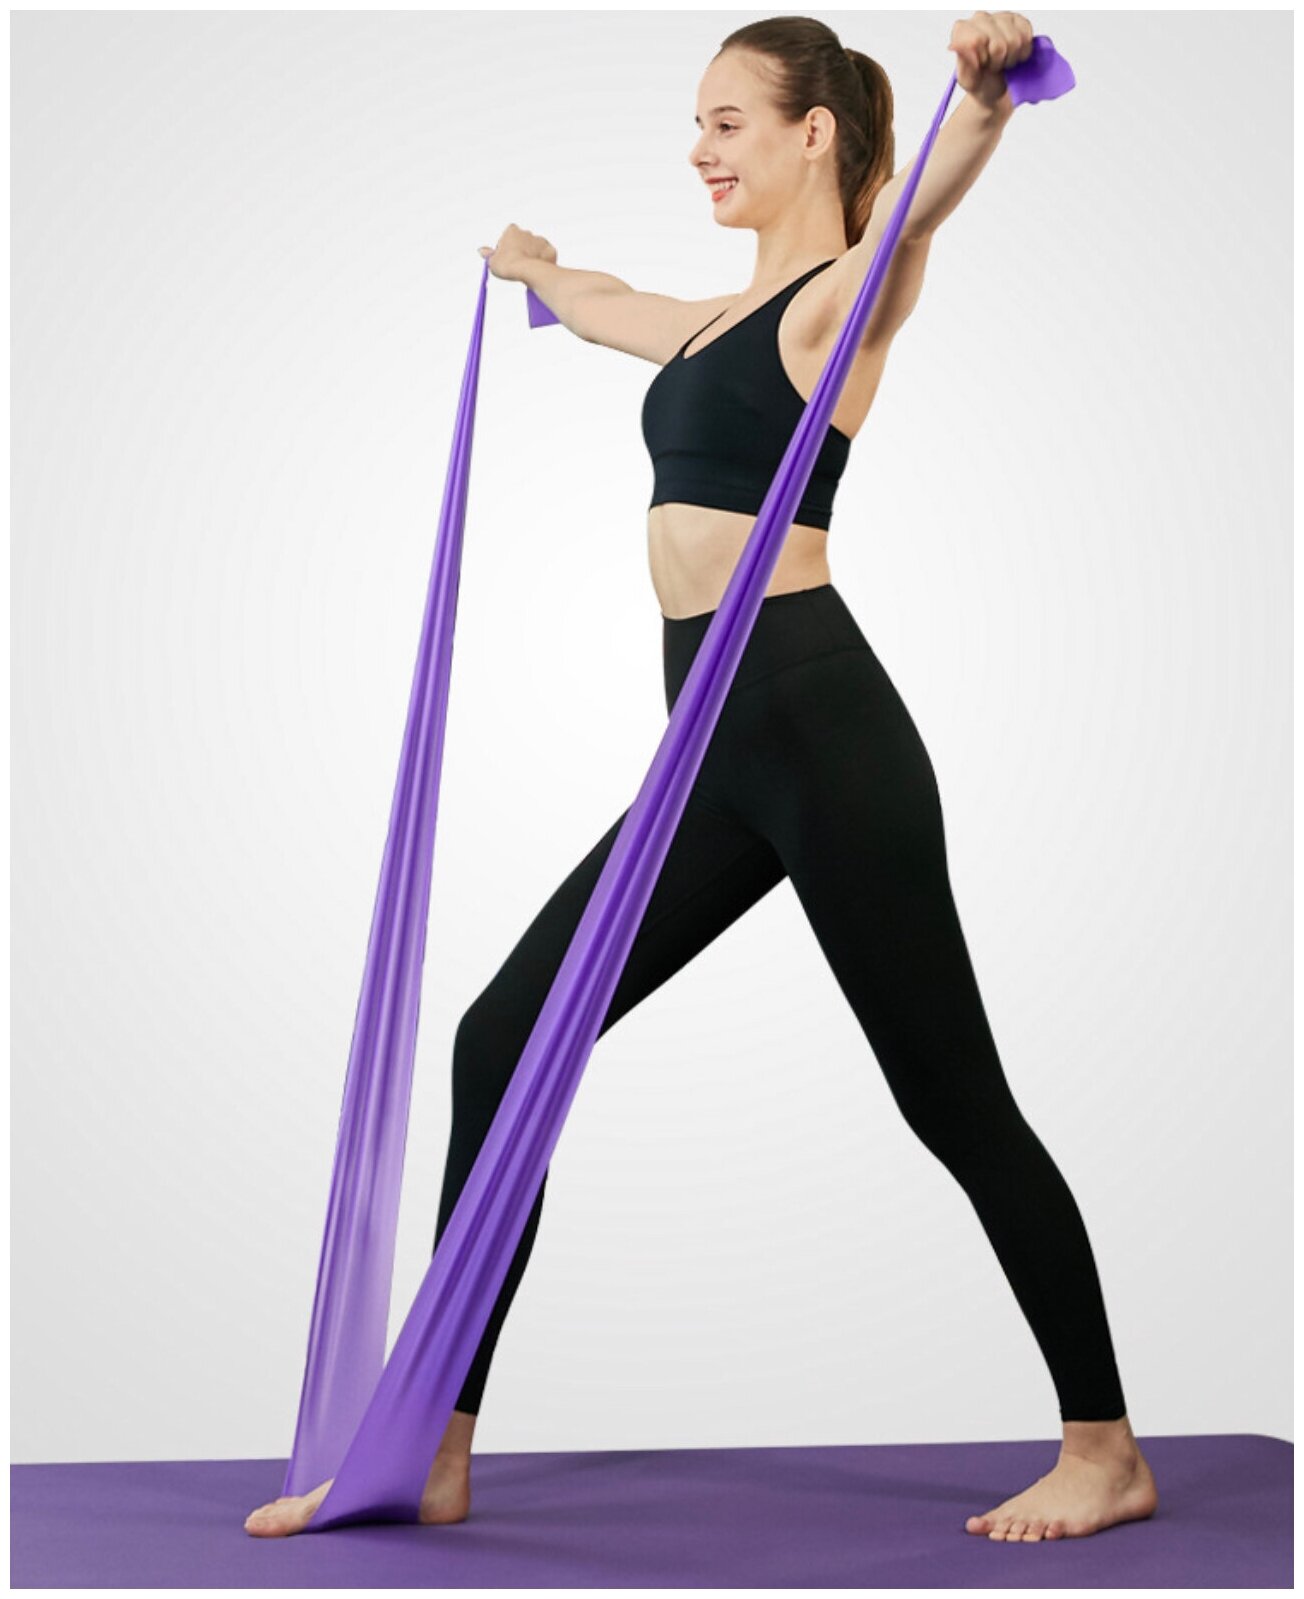 Эластичная лента для фитнеса 200х15 см. Фиолетовая / Фитнес резинка / Резинка для пилатеса йоги / Ленточный эспандер / Высокая степень нагрузки - 10 кг.